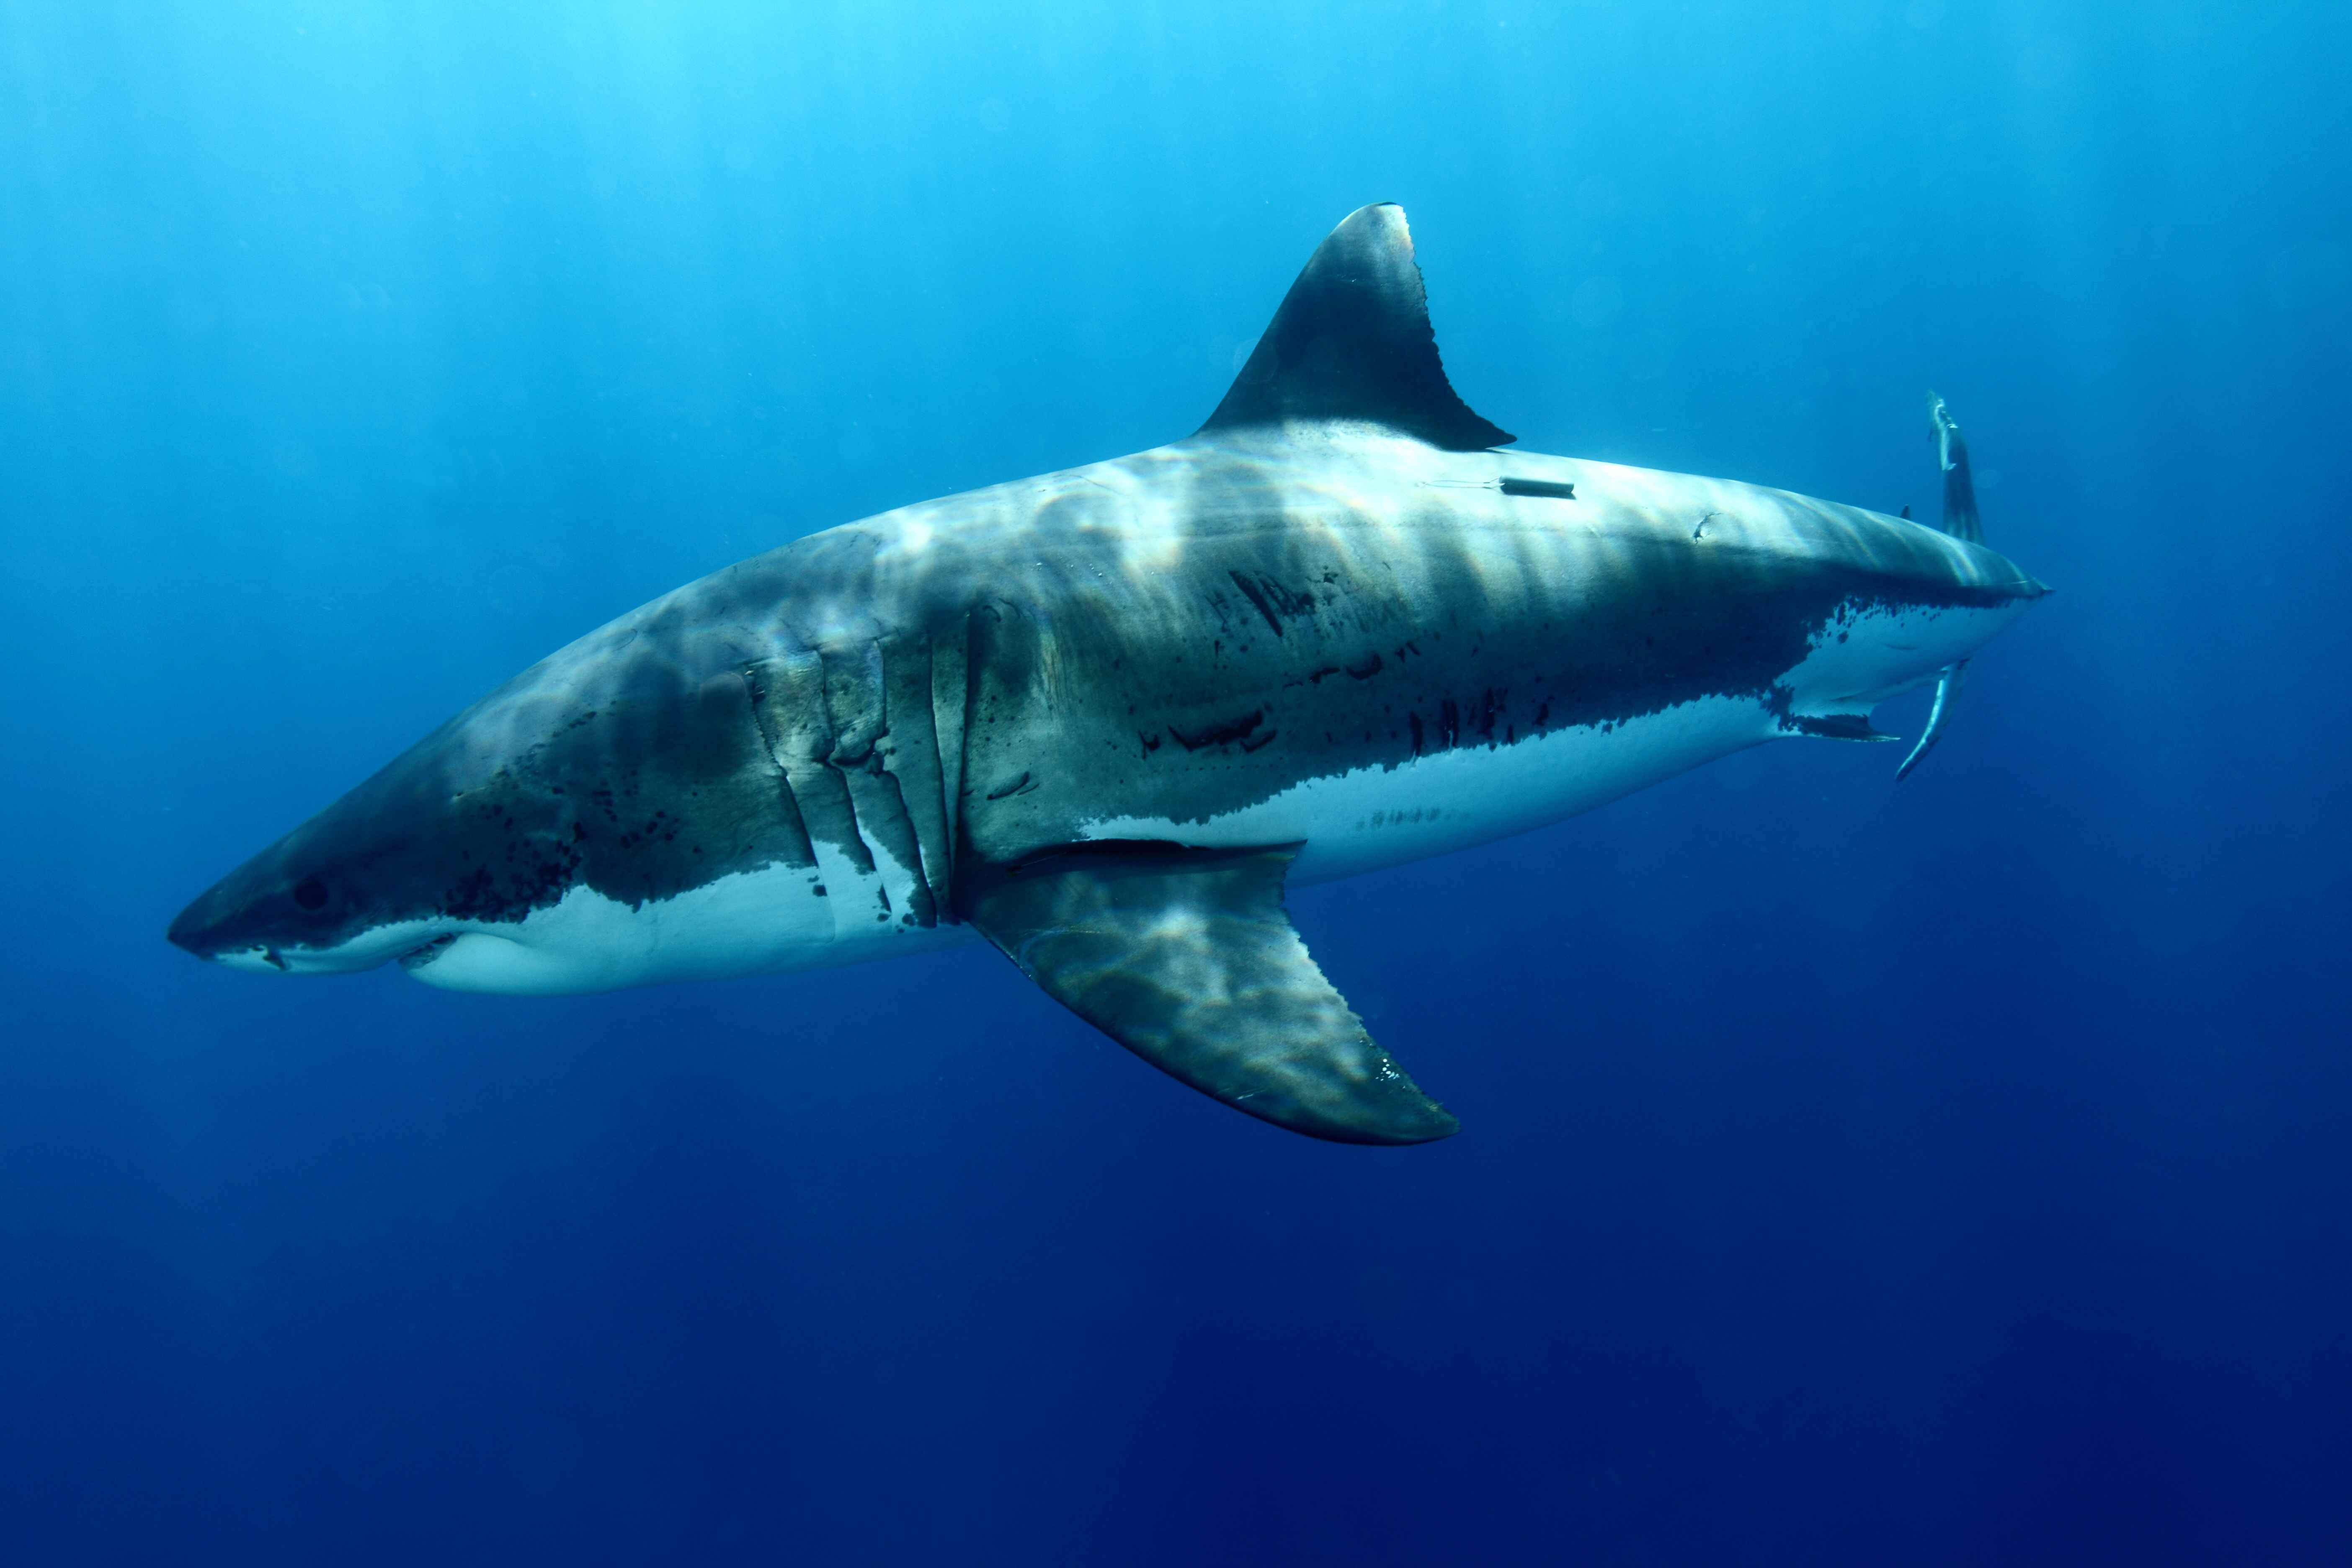 Animal Great White Shark 5616x3744